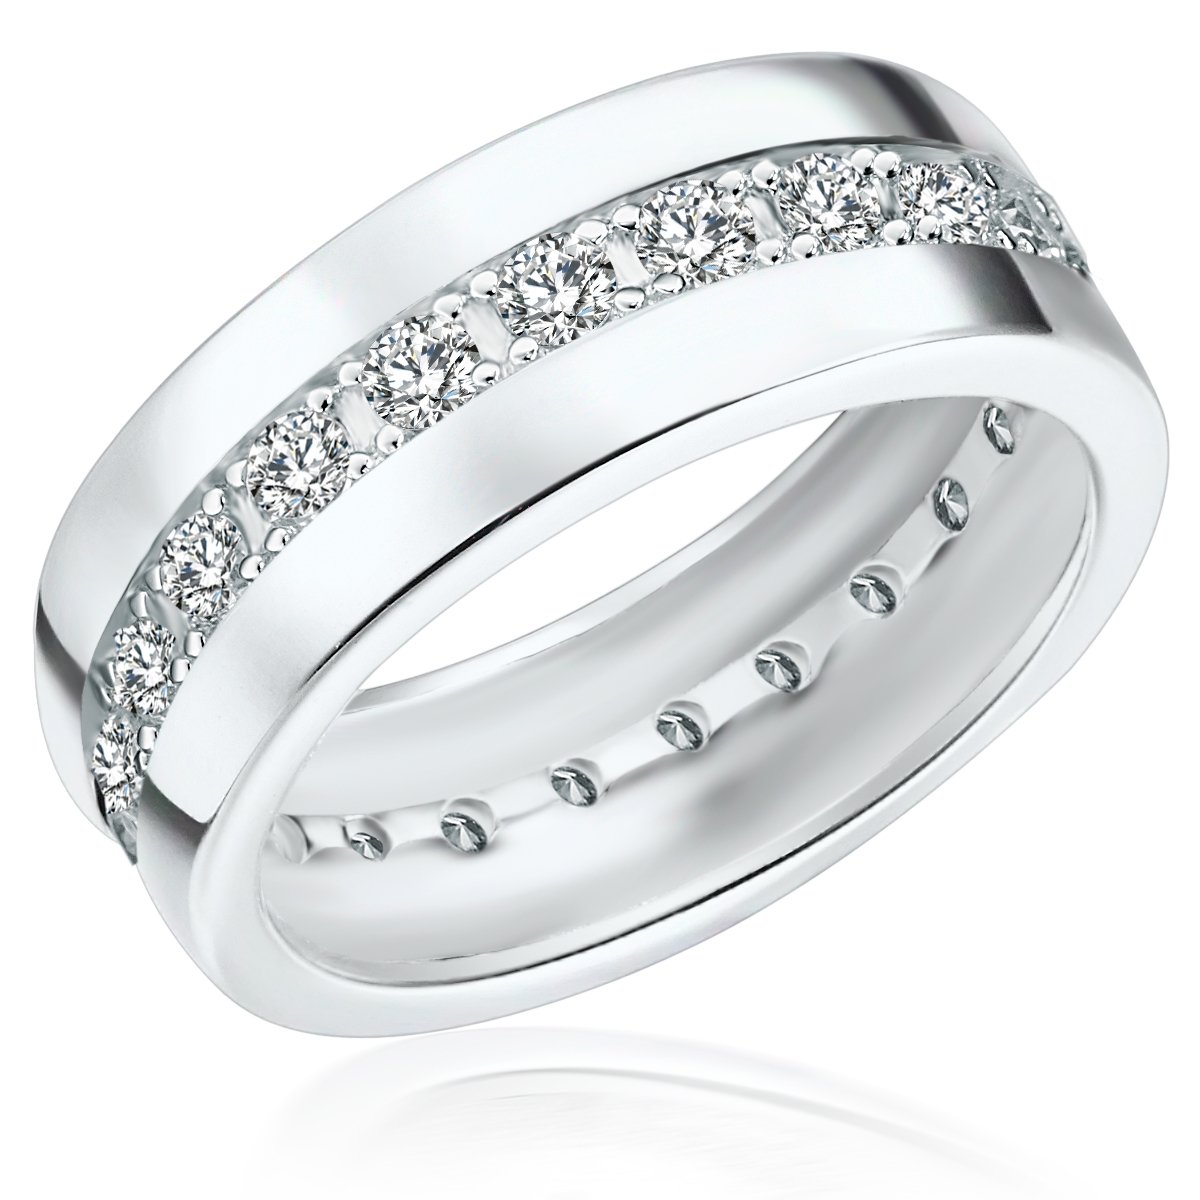 Rafaela Donata Damen-Ring 925 Sterling Silber Zirkonia weiß - Moderner Silberring in Memoire-Form mit Steinen 60800108